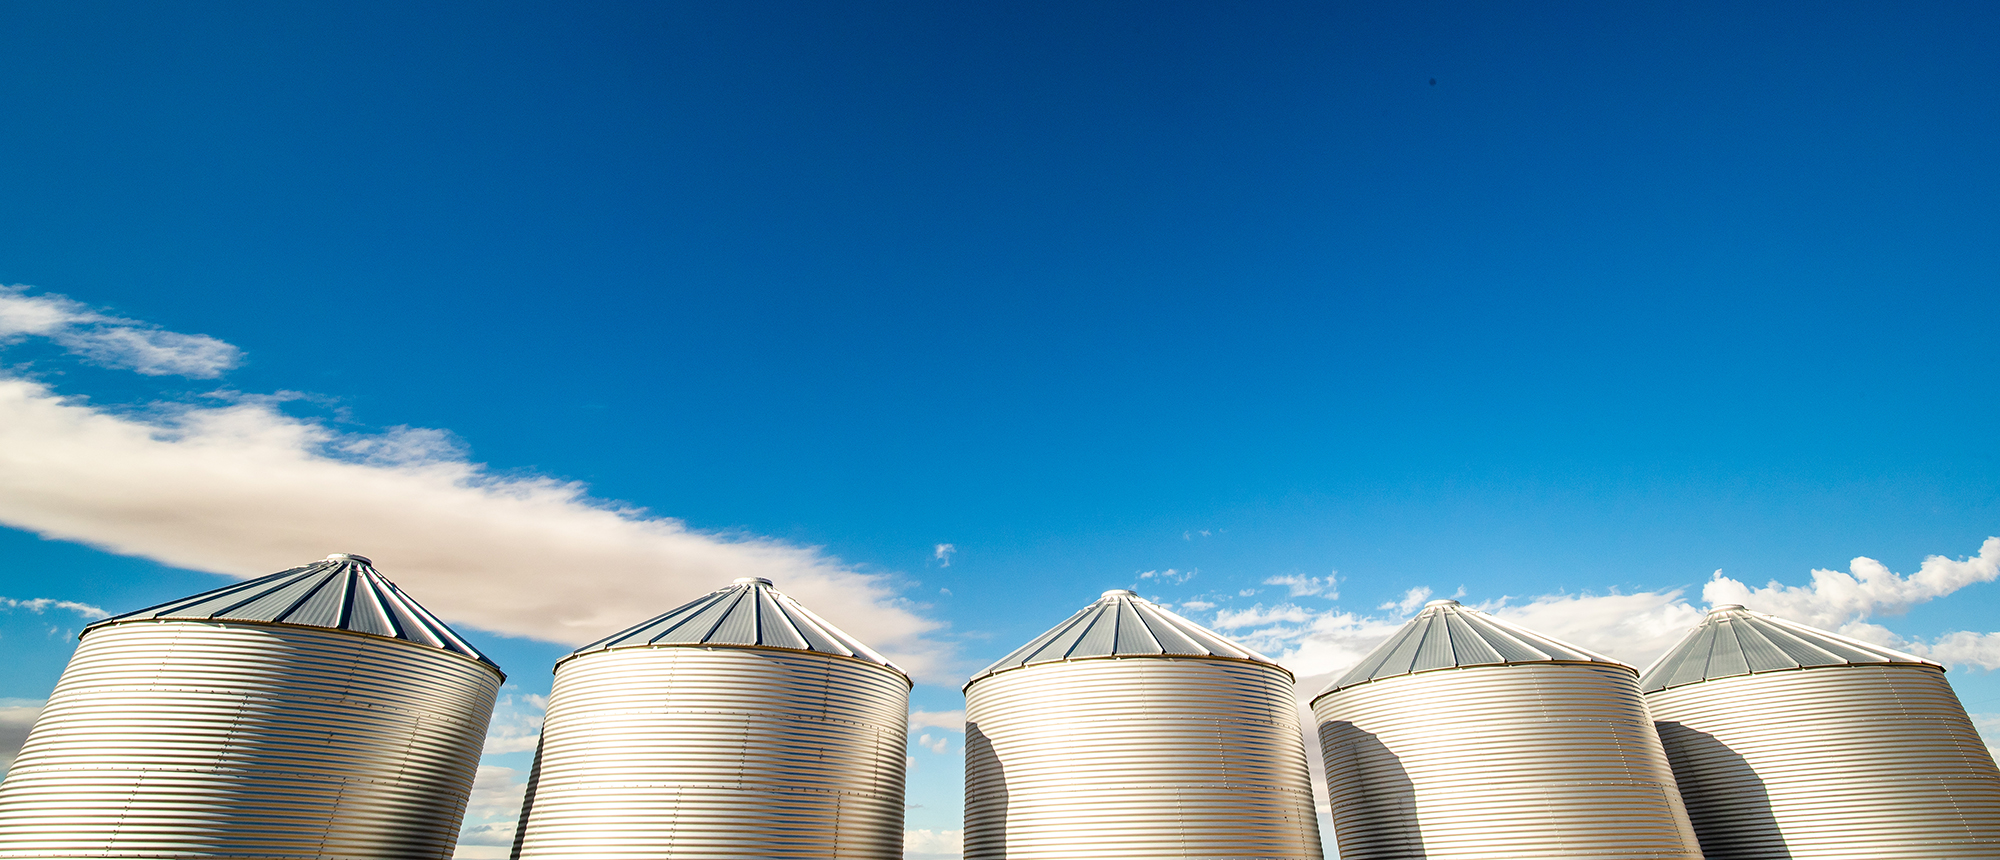 Grain bins against a bright blue sky